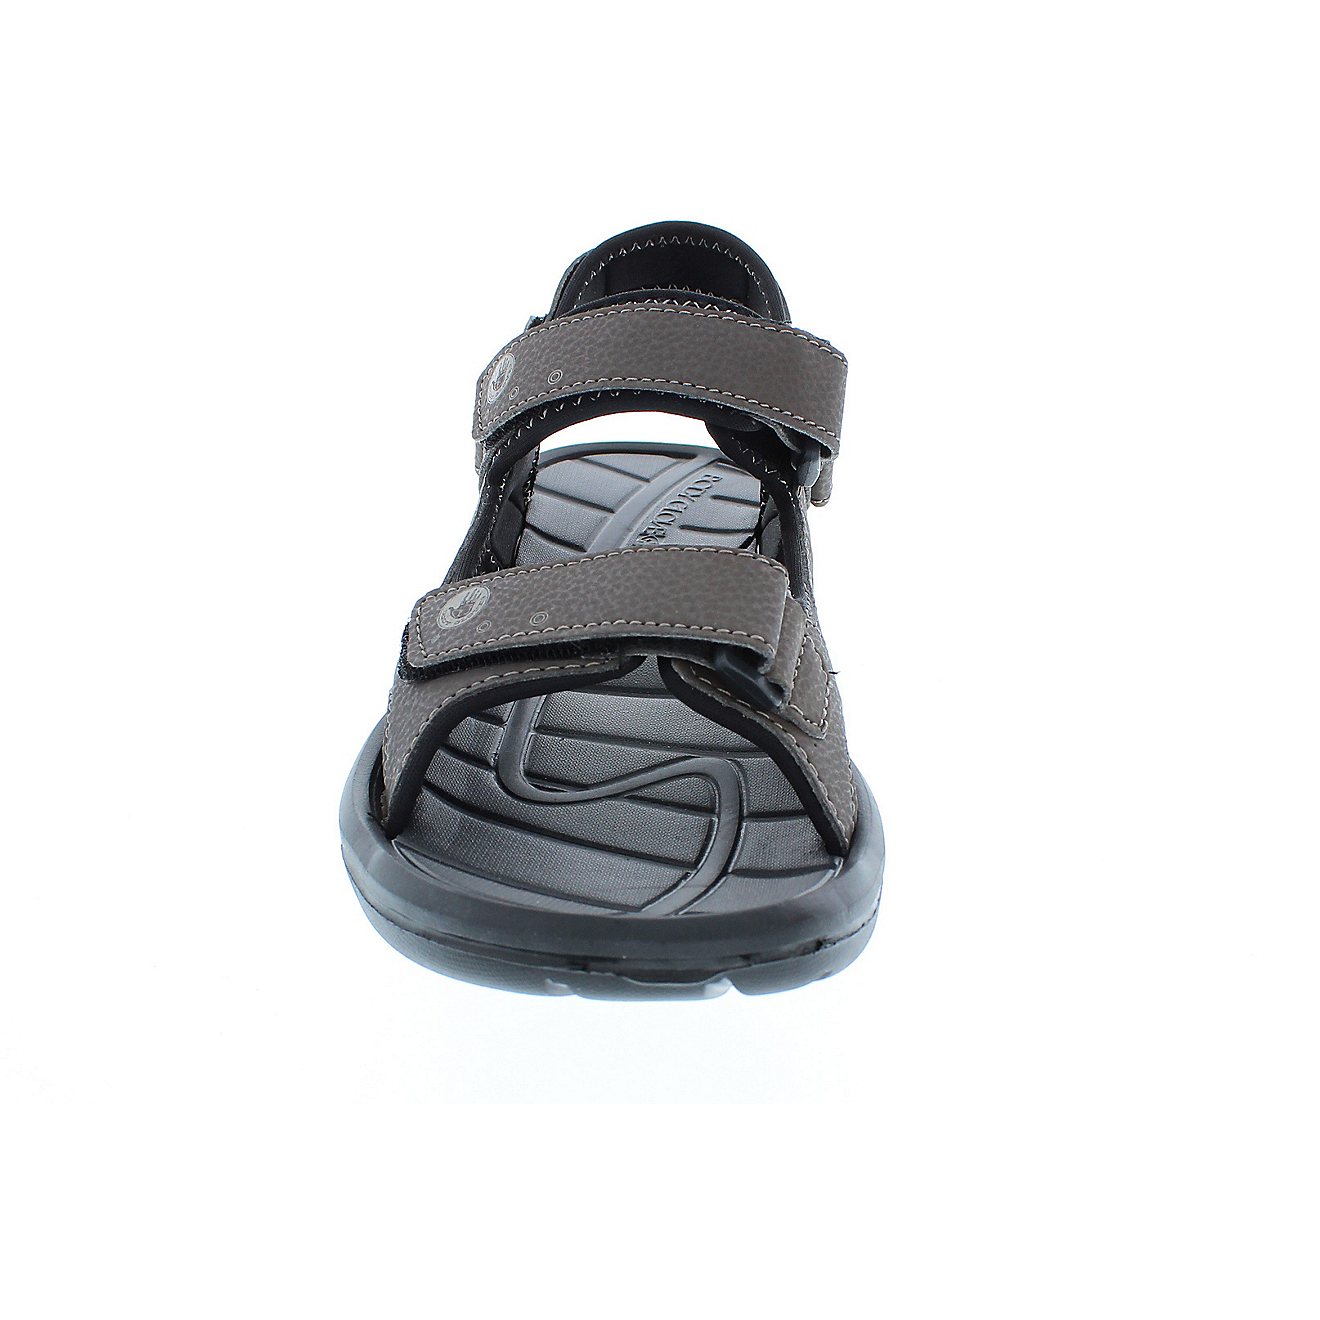 Body Glove Men's Adjustable Trek Sandals                                                                                         - view number 4